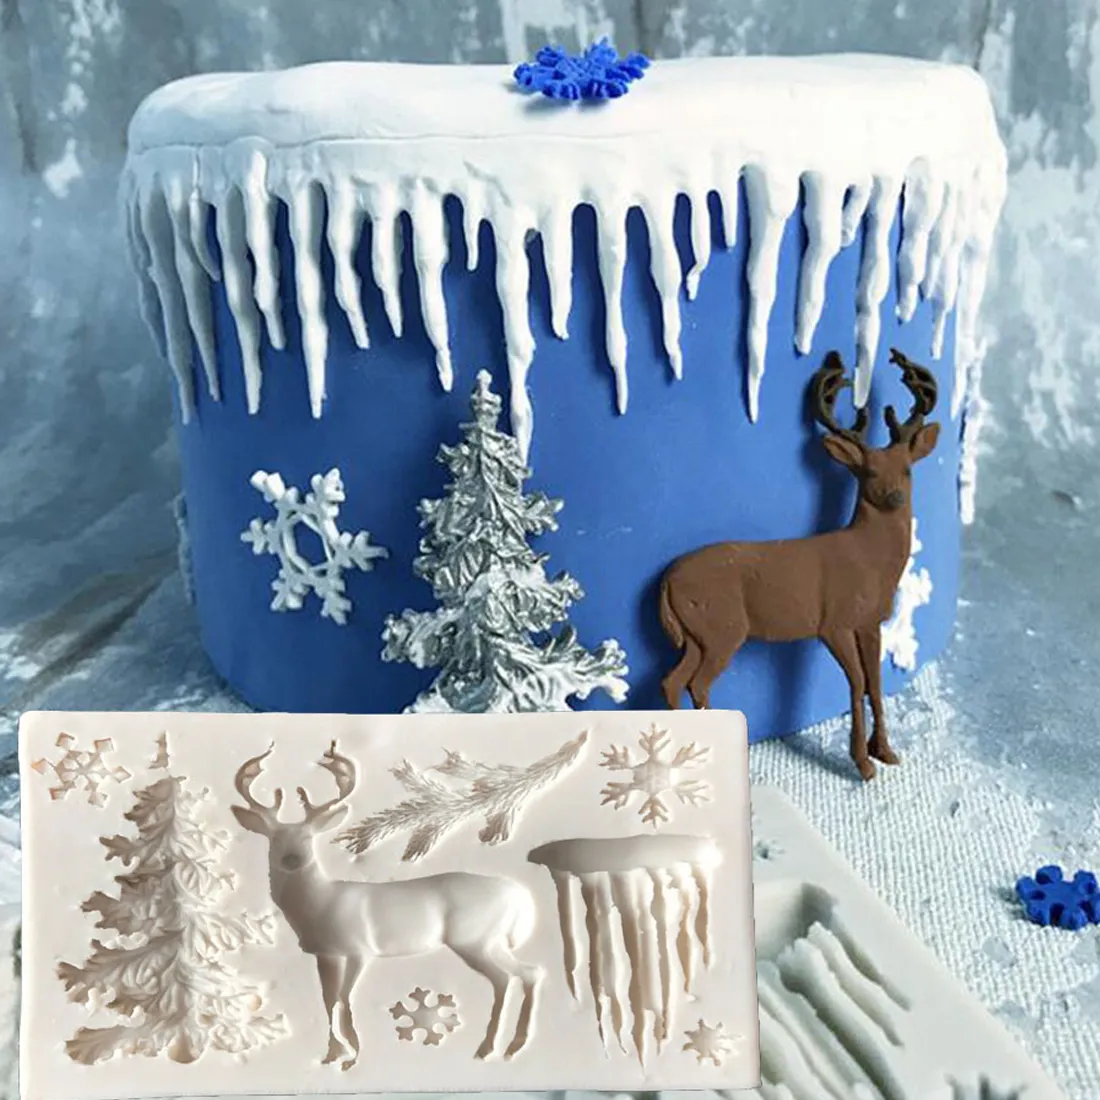 كورن مفيدة الشجرة عيد الميلاد الأيائل الثلج Snowflake قالب الشوكولاتة الهلام الخبز العفن أدوات حرفية السكر فندان تزيين 4164767